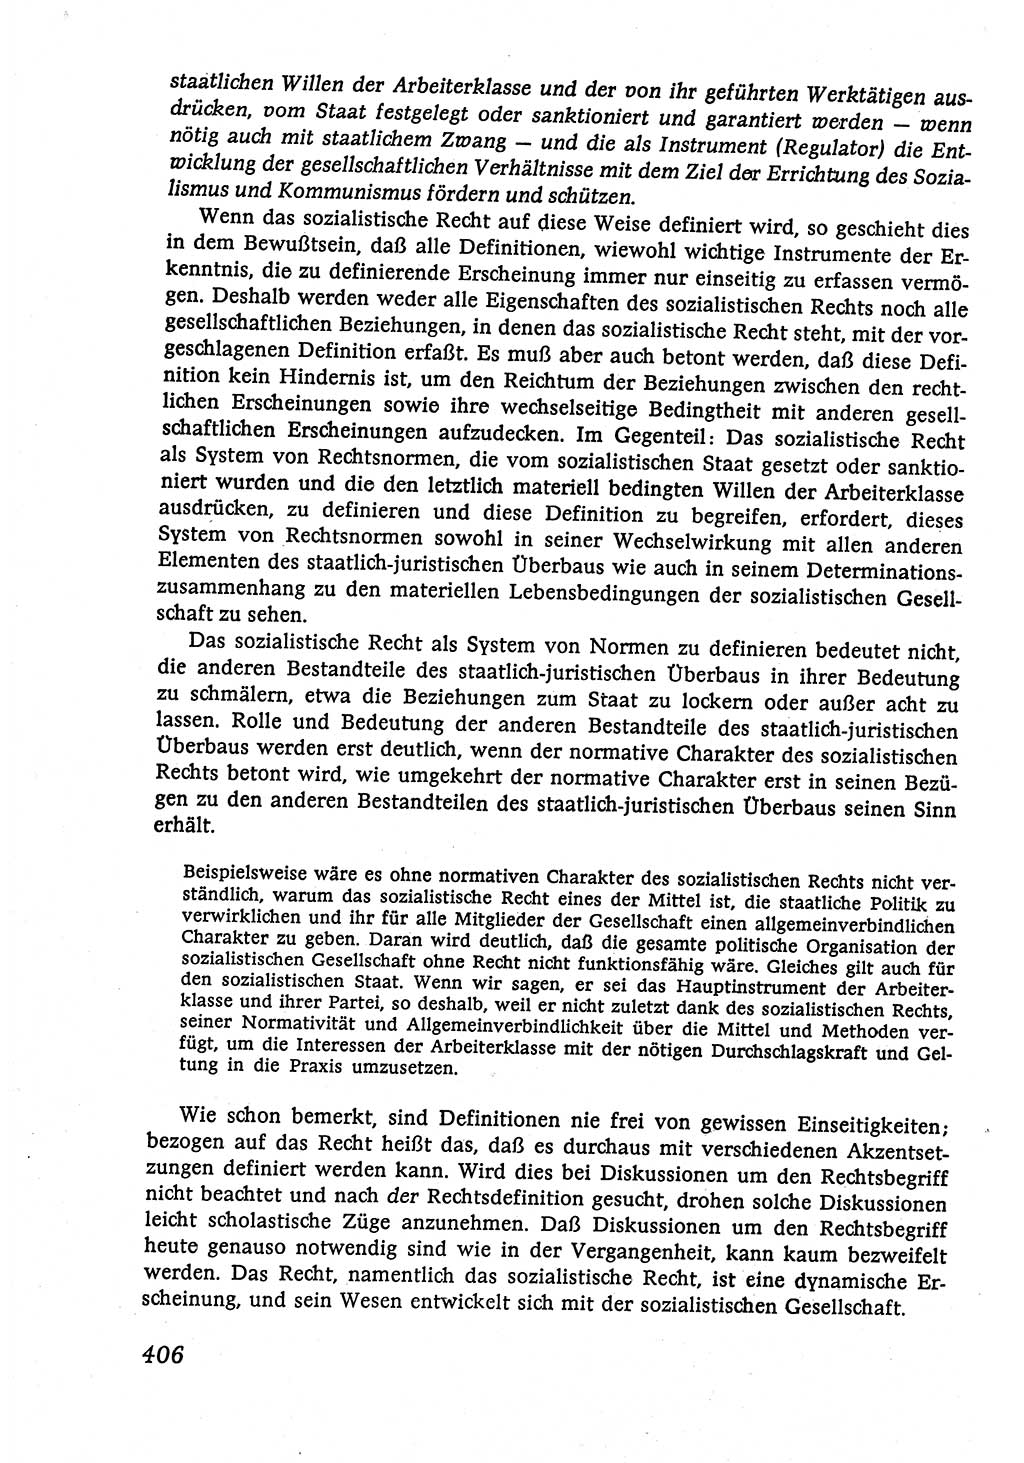 Marxistisch-leninistische (ML) Staats- und Rechtstheorie [Deutsche Demokratische Republik (DDR)], Lehrbuch 1980, Seite 406 (ML St.-R.-Th. DDR Lb. 1980, S. 406)